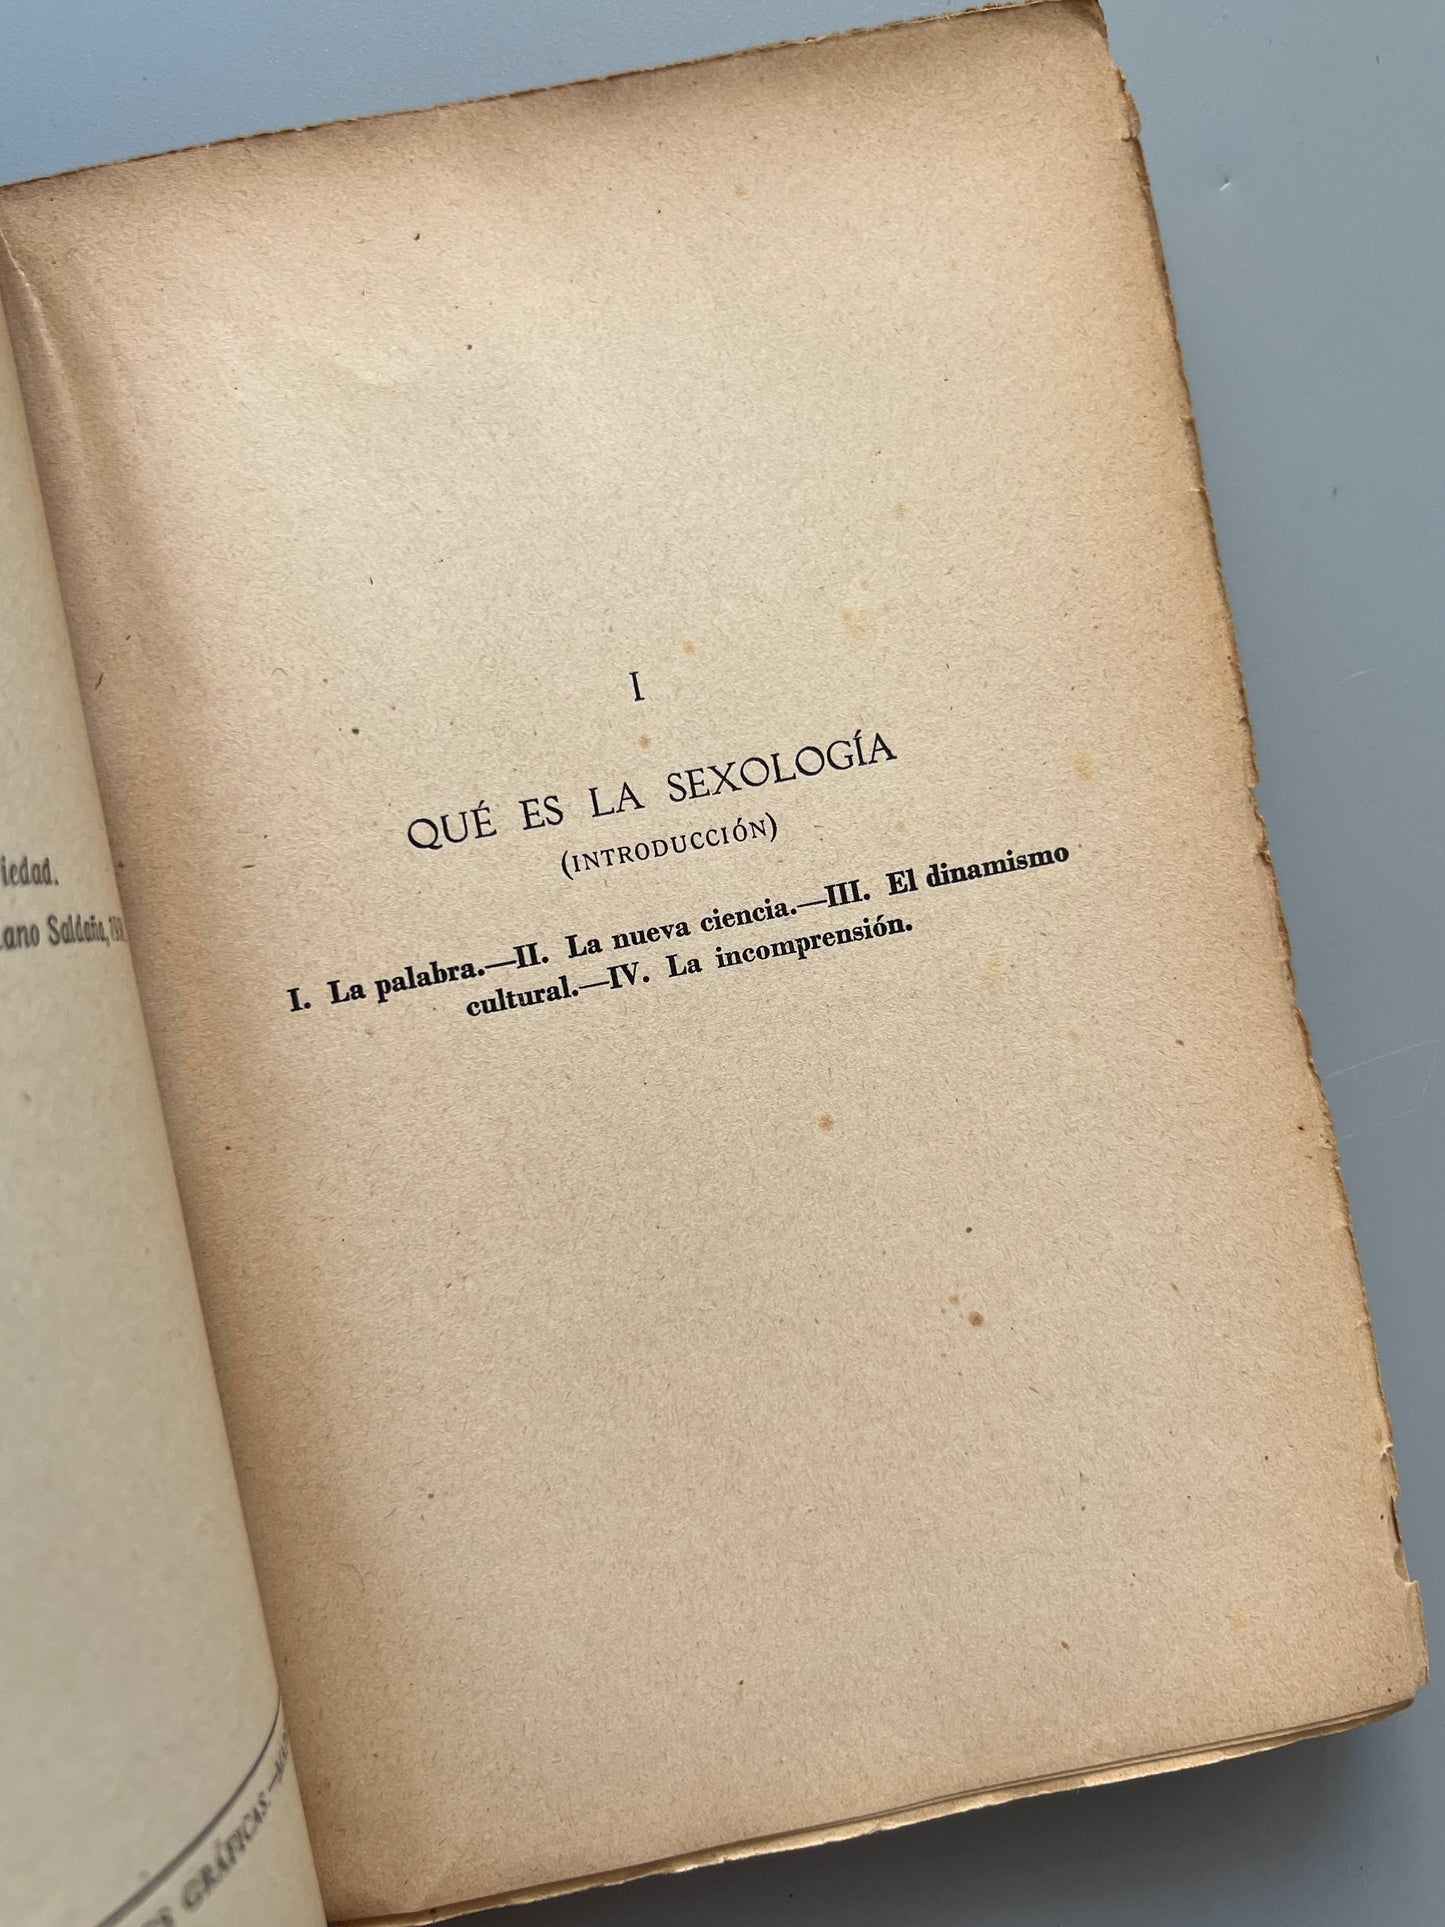 La sexología (ensayos), Quintiliano Saldaña - Mundo Latino, 1930